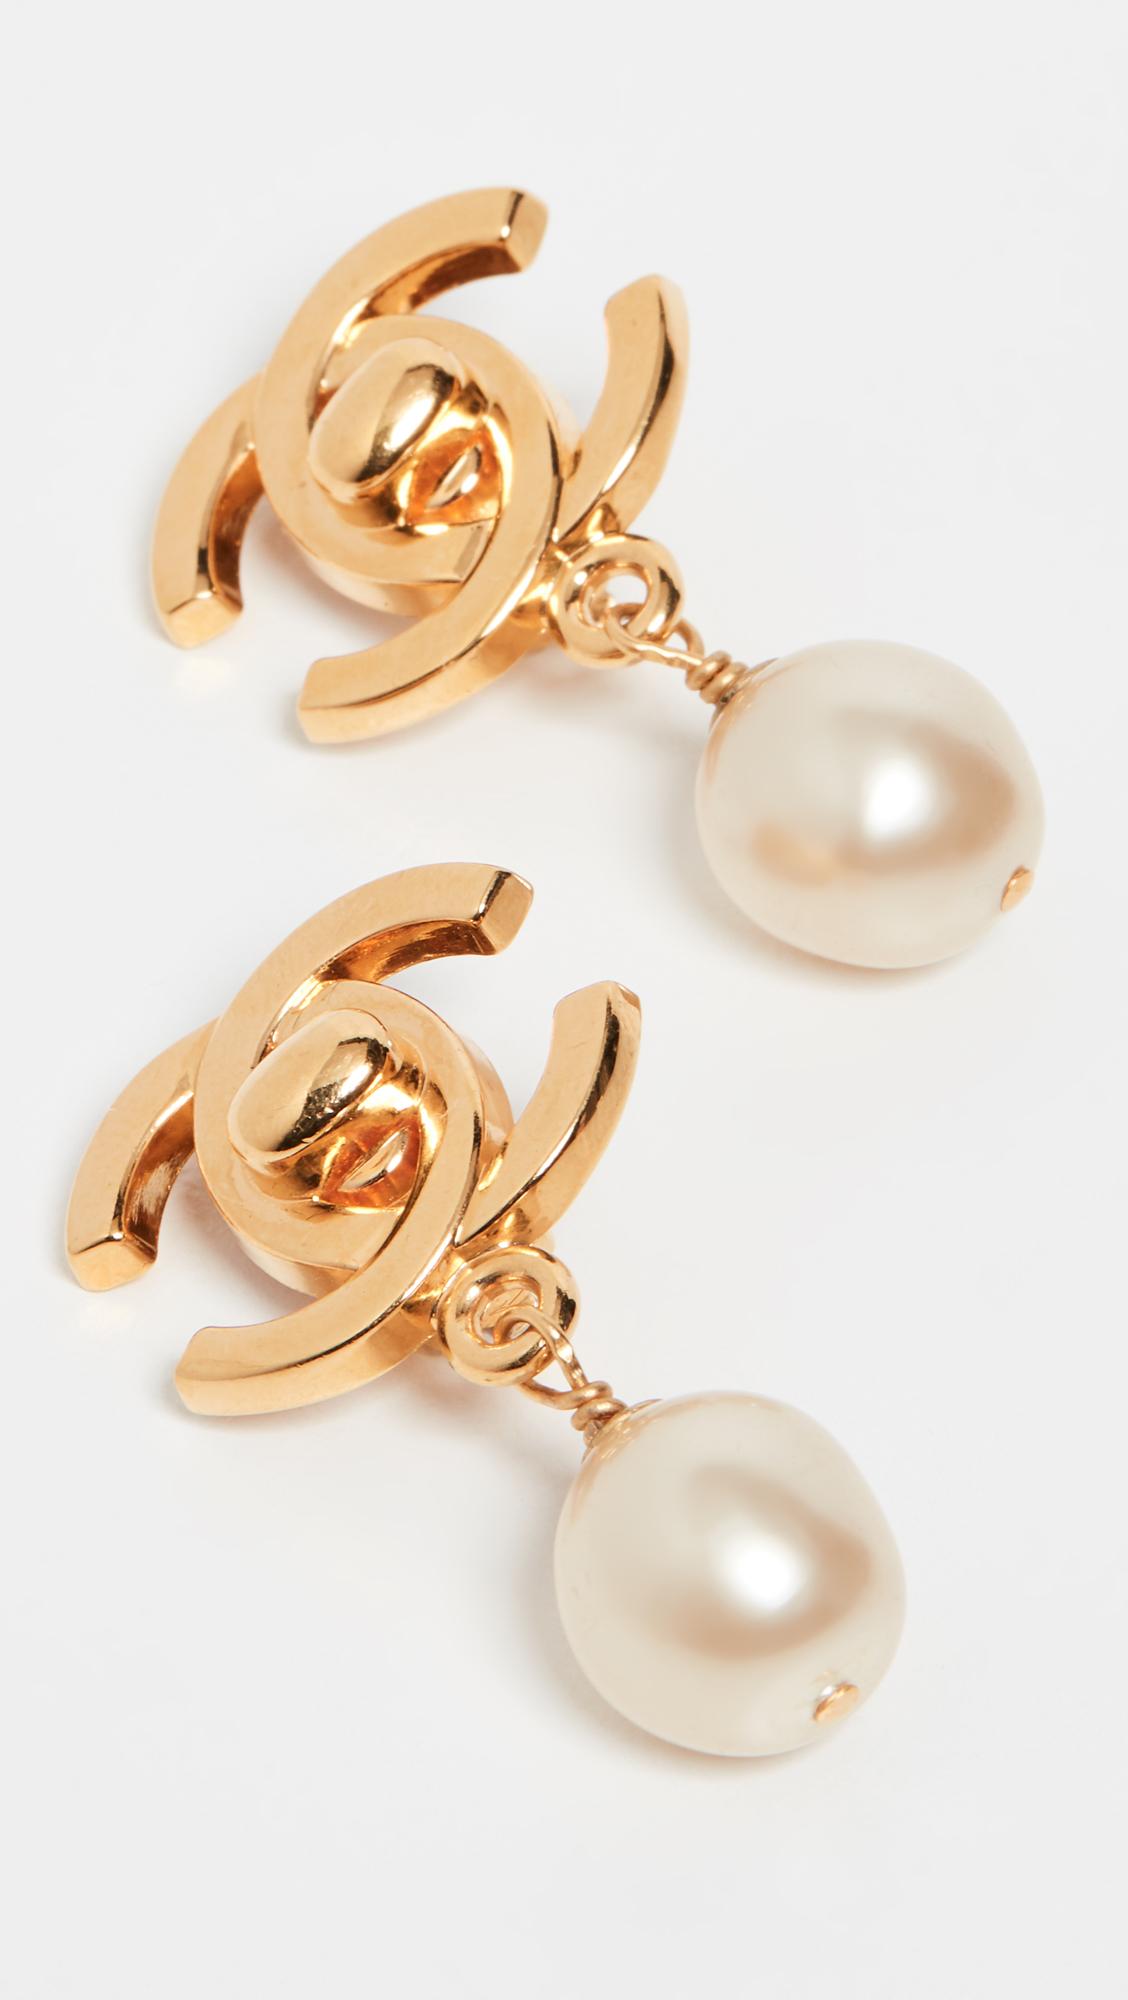 Chanel Silver-tone Cc Faux Pearl Drop Earrings in Metallic